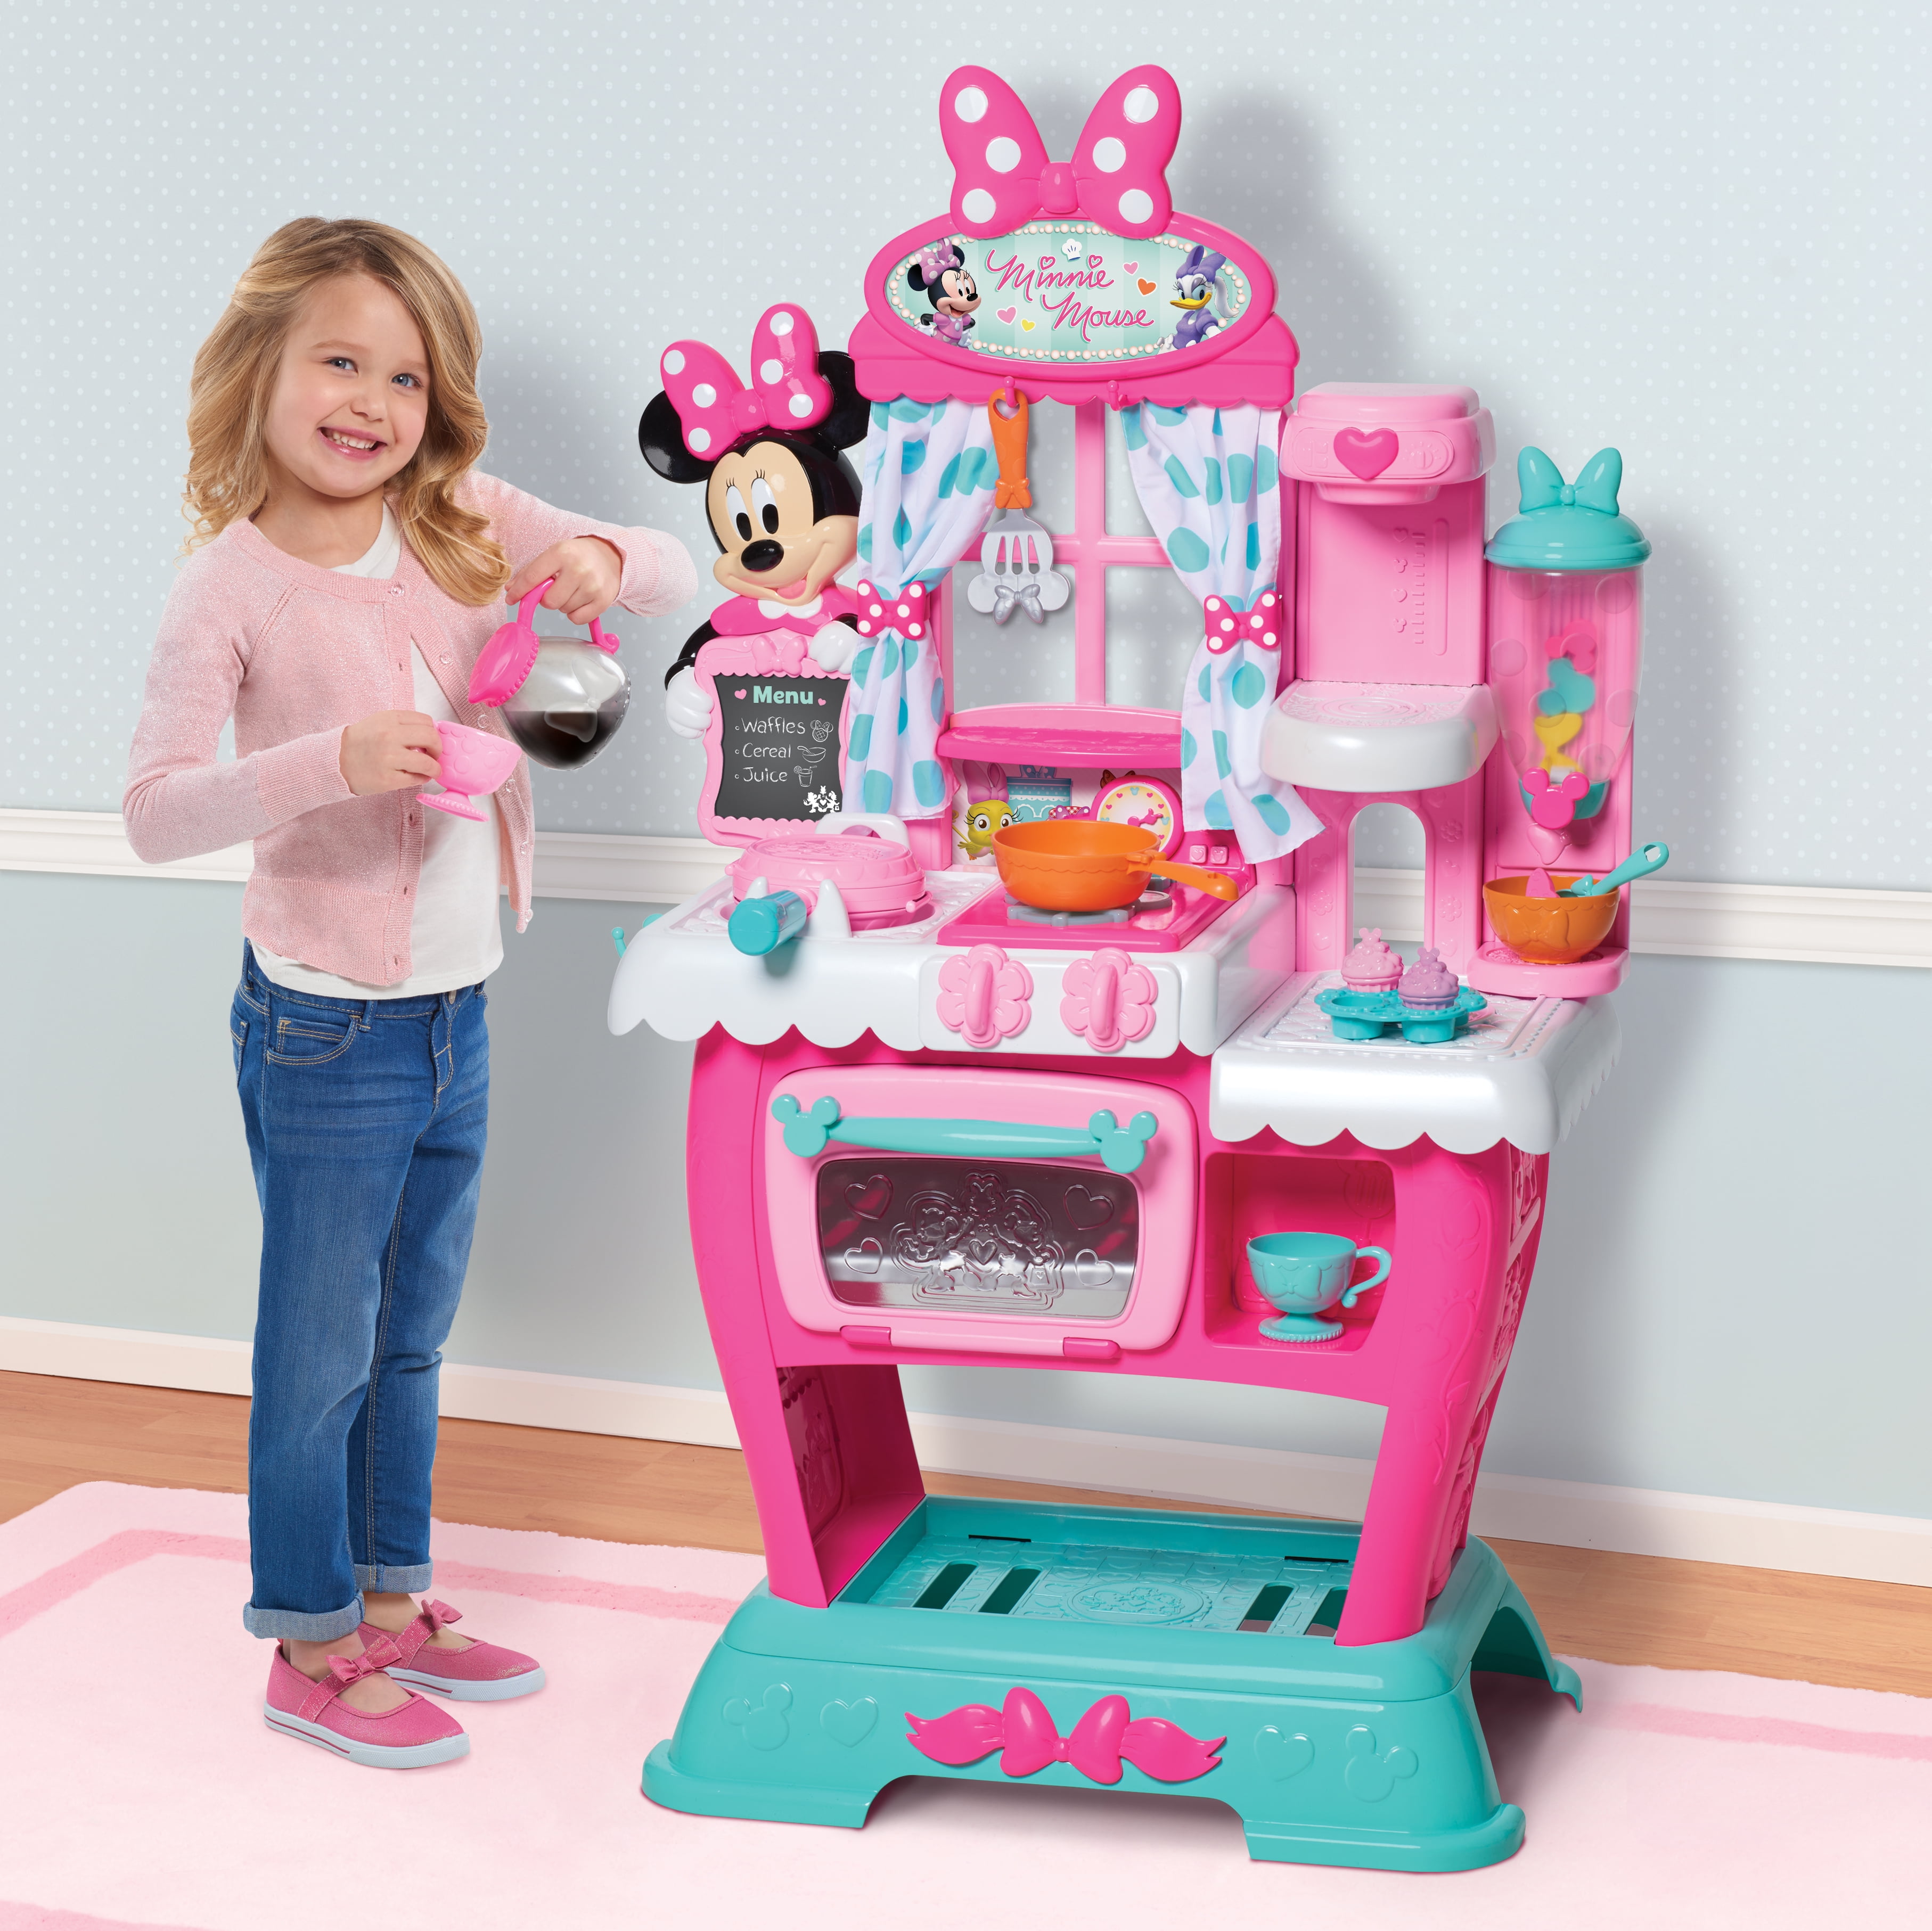 Игрушки для девушек купить. Кухня Smoby Minnie Mouse. Кухня Минни Маус Дисней. Игровые наборы Minnie Mouse кухня. Детская кухня Микки Маус.